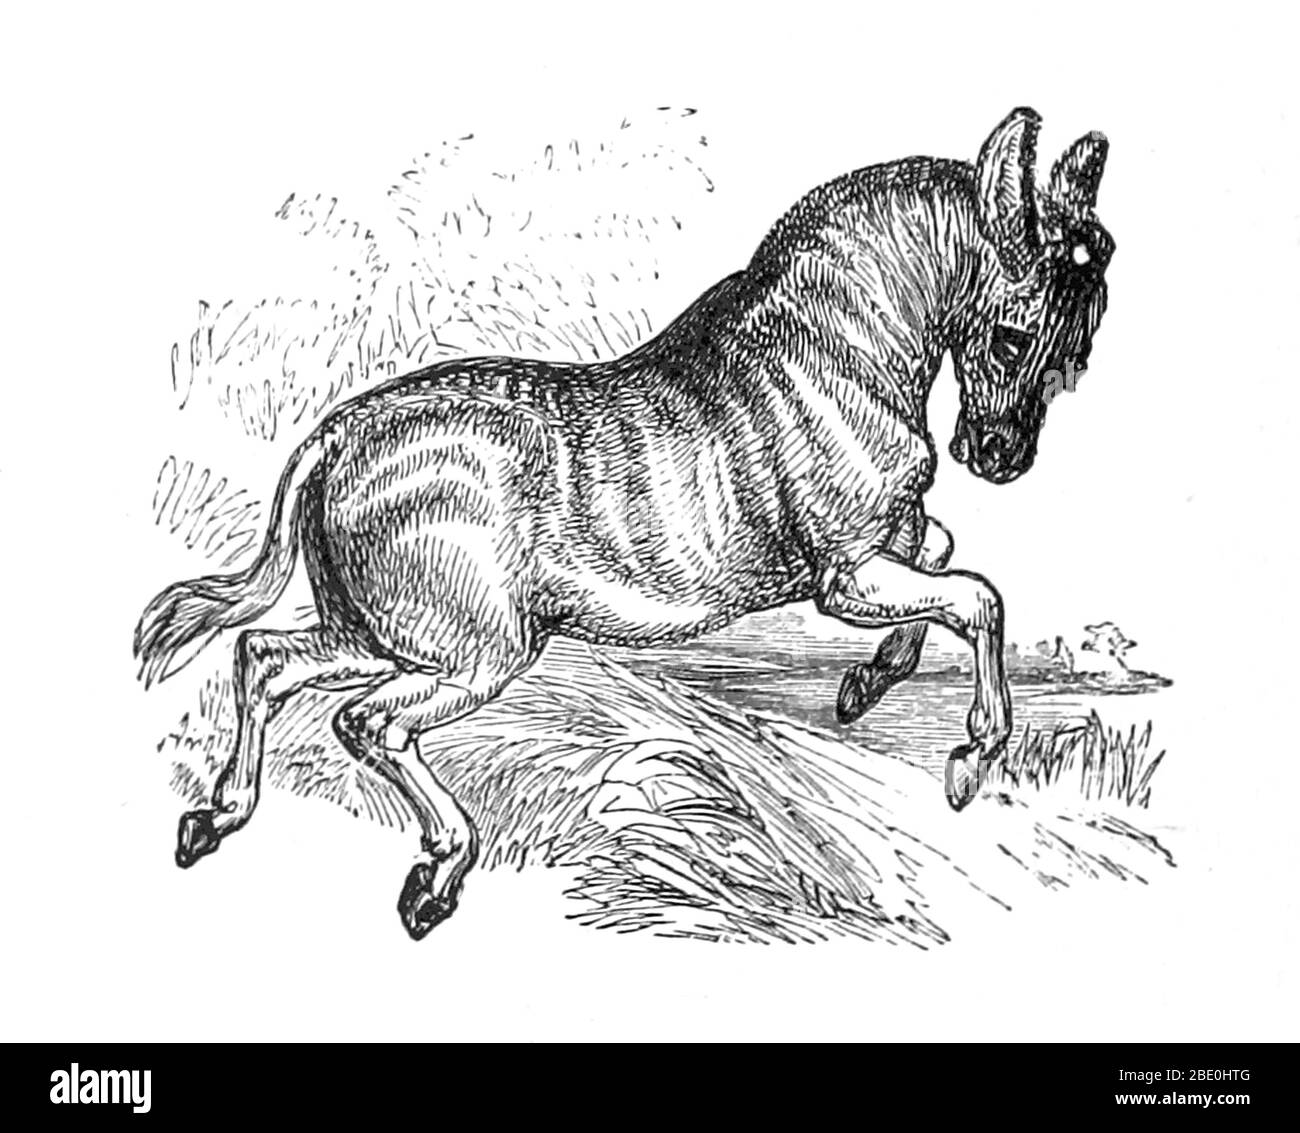 Eine Illustration aus dem Jahr 1874 eines Quagga. Quagga (Equus quagga quagga) ist eine ausgestorbene Unterart der Ebenen Zebra, die in Südafrika bis zum neunzehnten Jahrhundert lebte. Es wurde lange Zeit gedacht, um eine eigenständige Art zu sein, aber genetische Studien haben gezeigt, dass es die südlichste Unterart der Ebenen Zebra. Es gilt als besonders nahe an Burchells Zebra. Sein Name leitet sich von seinem Ruf ab, der wie 'kwa-ha-ha' klingt. Das letzte gefangener Exemplar starb am 12. August 1883 in Amsterdam. 1984 war das Quagga das erste ausgestorbene Tier, das seine DNA analysieren konnte, und das Quagga-Projekt versucht es Stockfoto